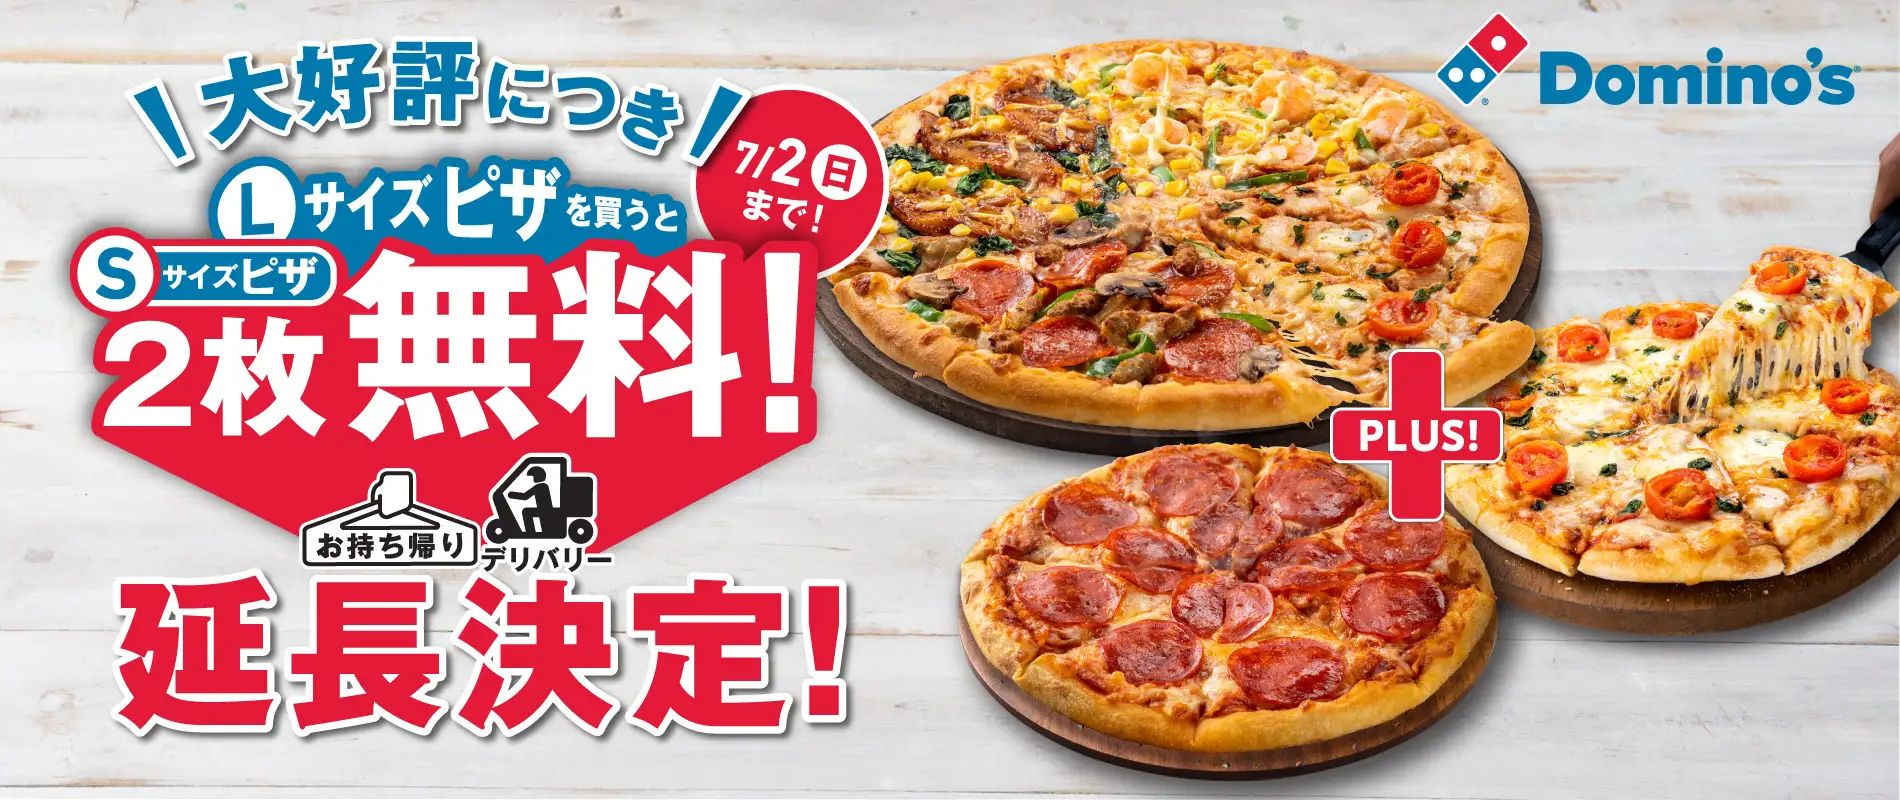 ドミノ･ピザ「Lサイズピザを買うとSサイズピザ2枚無料!」延長決定